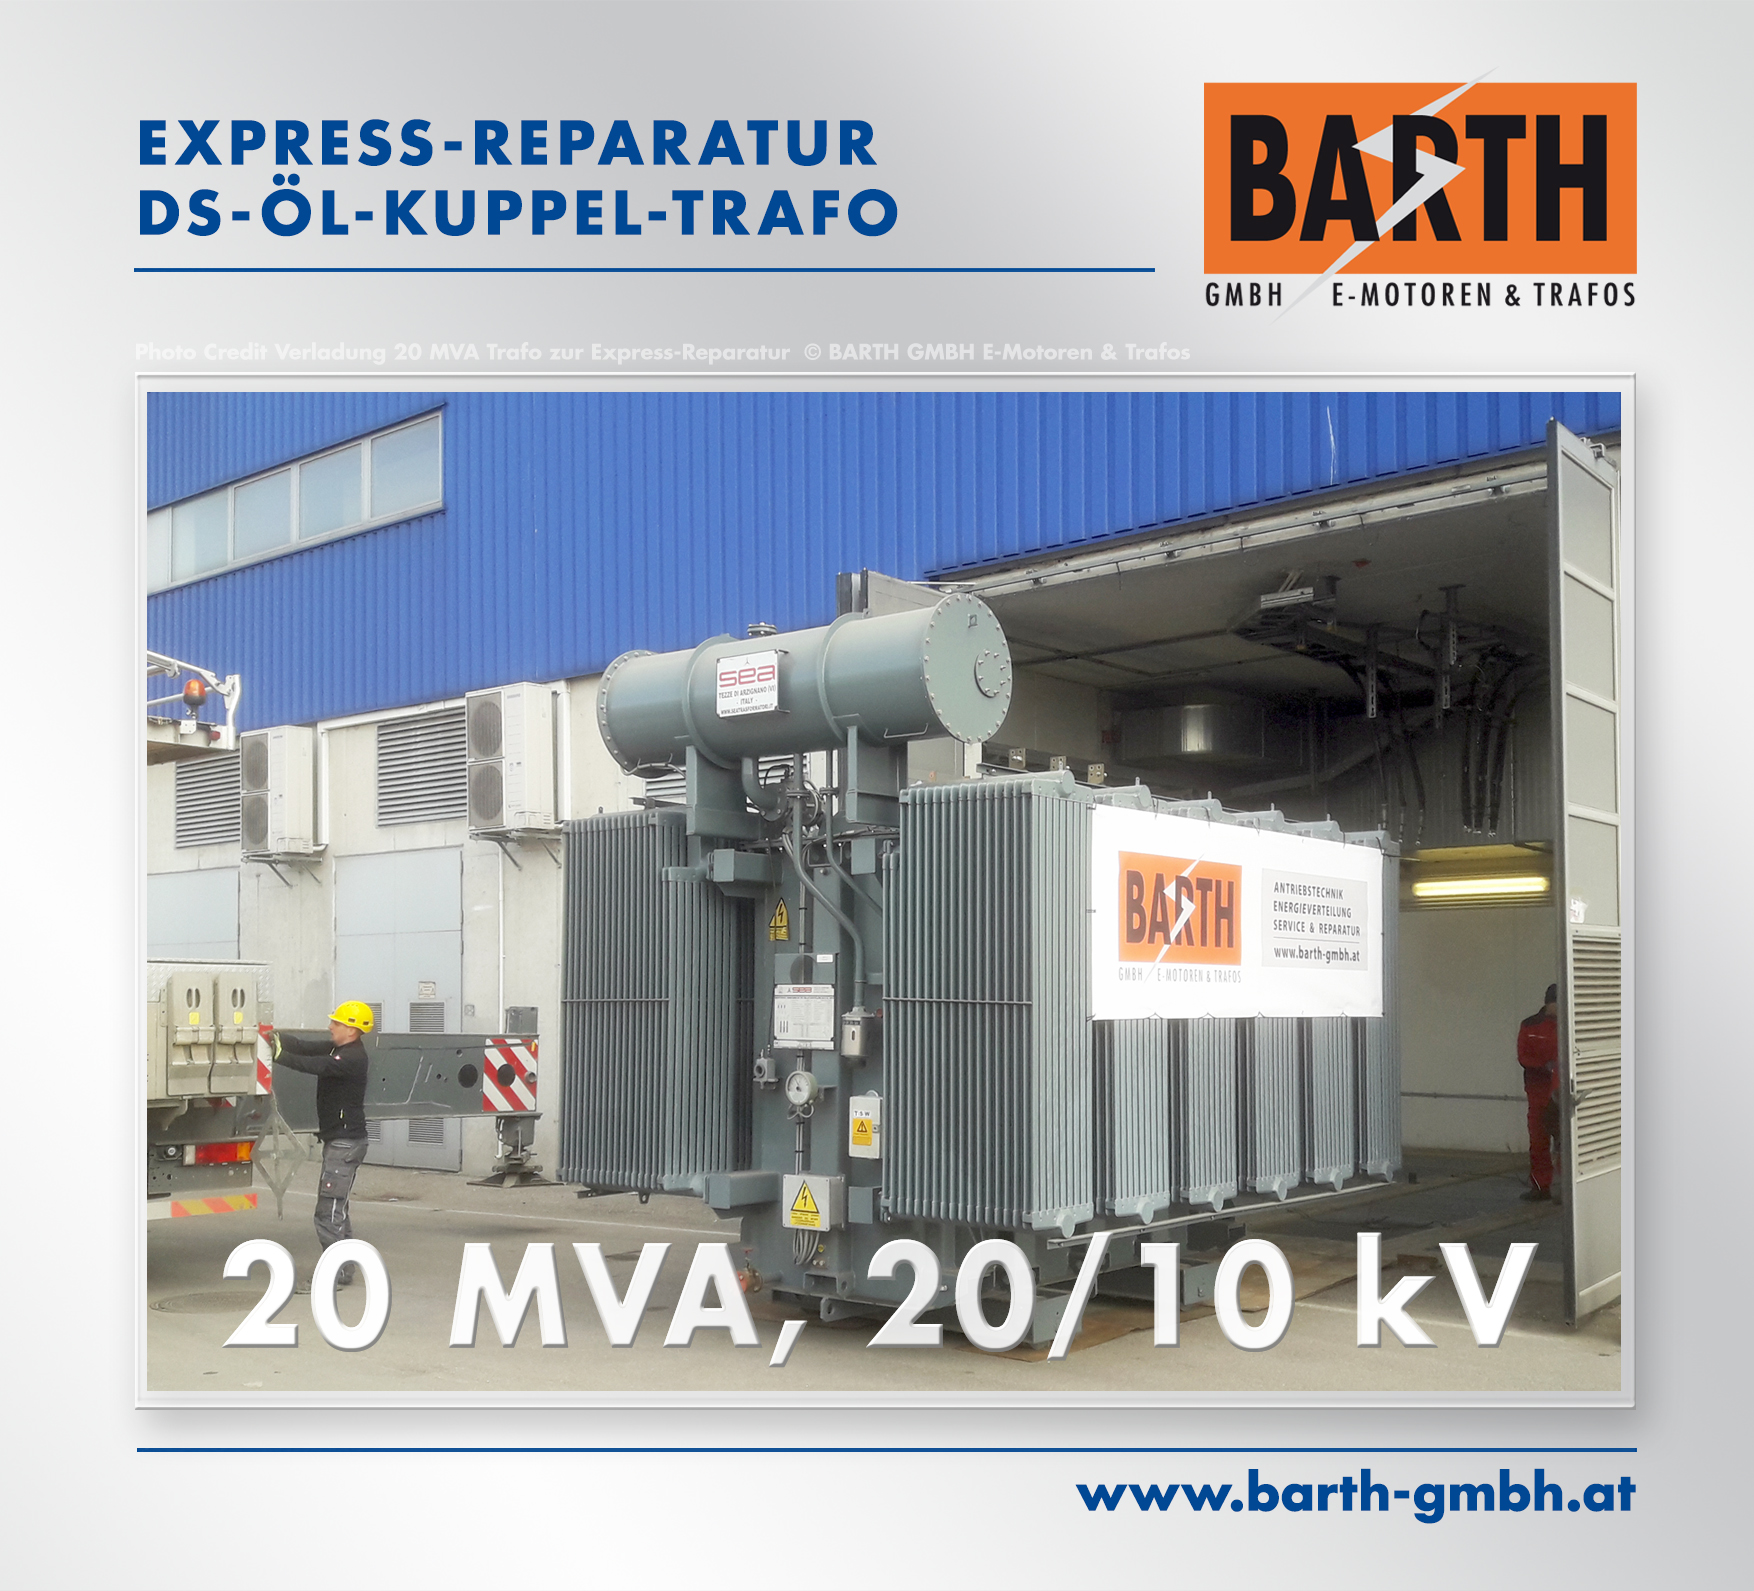 Express-Reparatur eines 20 MVA-Kuppel-Trafos (Tausch des Umstellers)